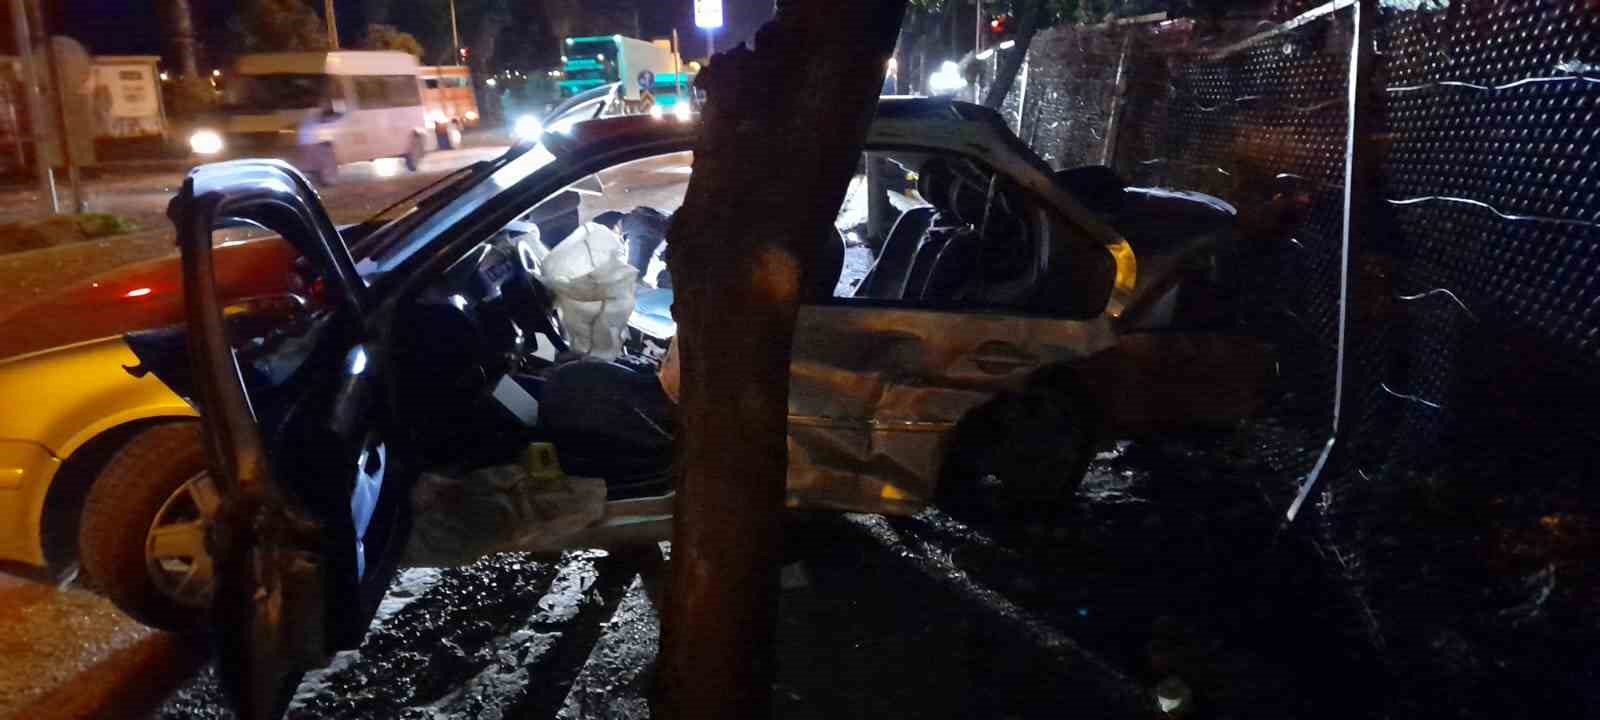 kozan’da trafik kazası: 2 ölü, 2 yaralı